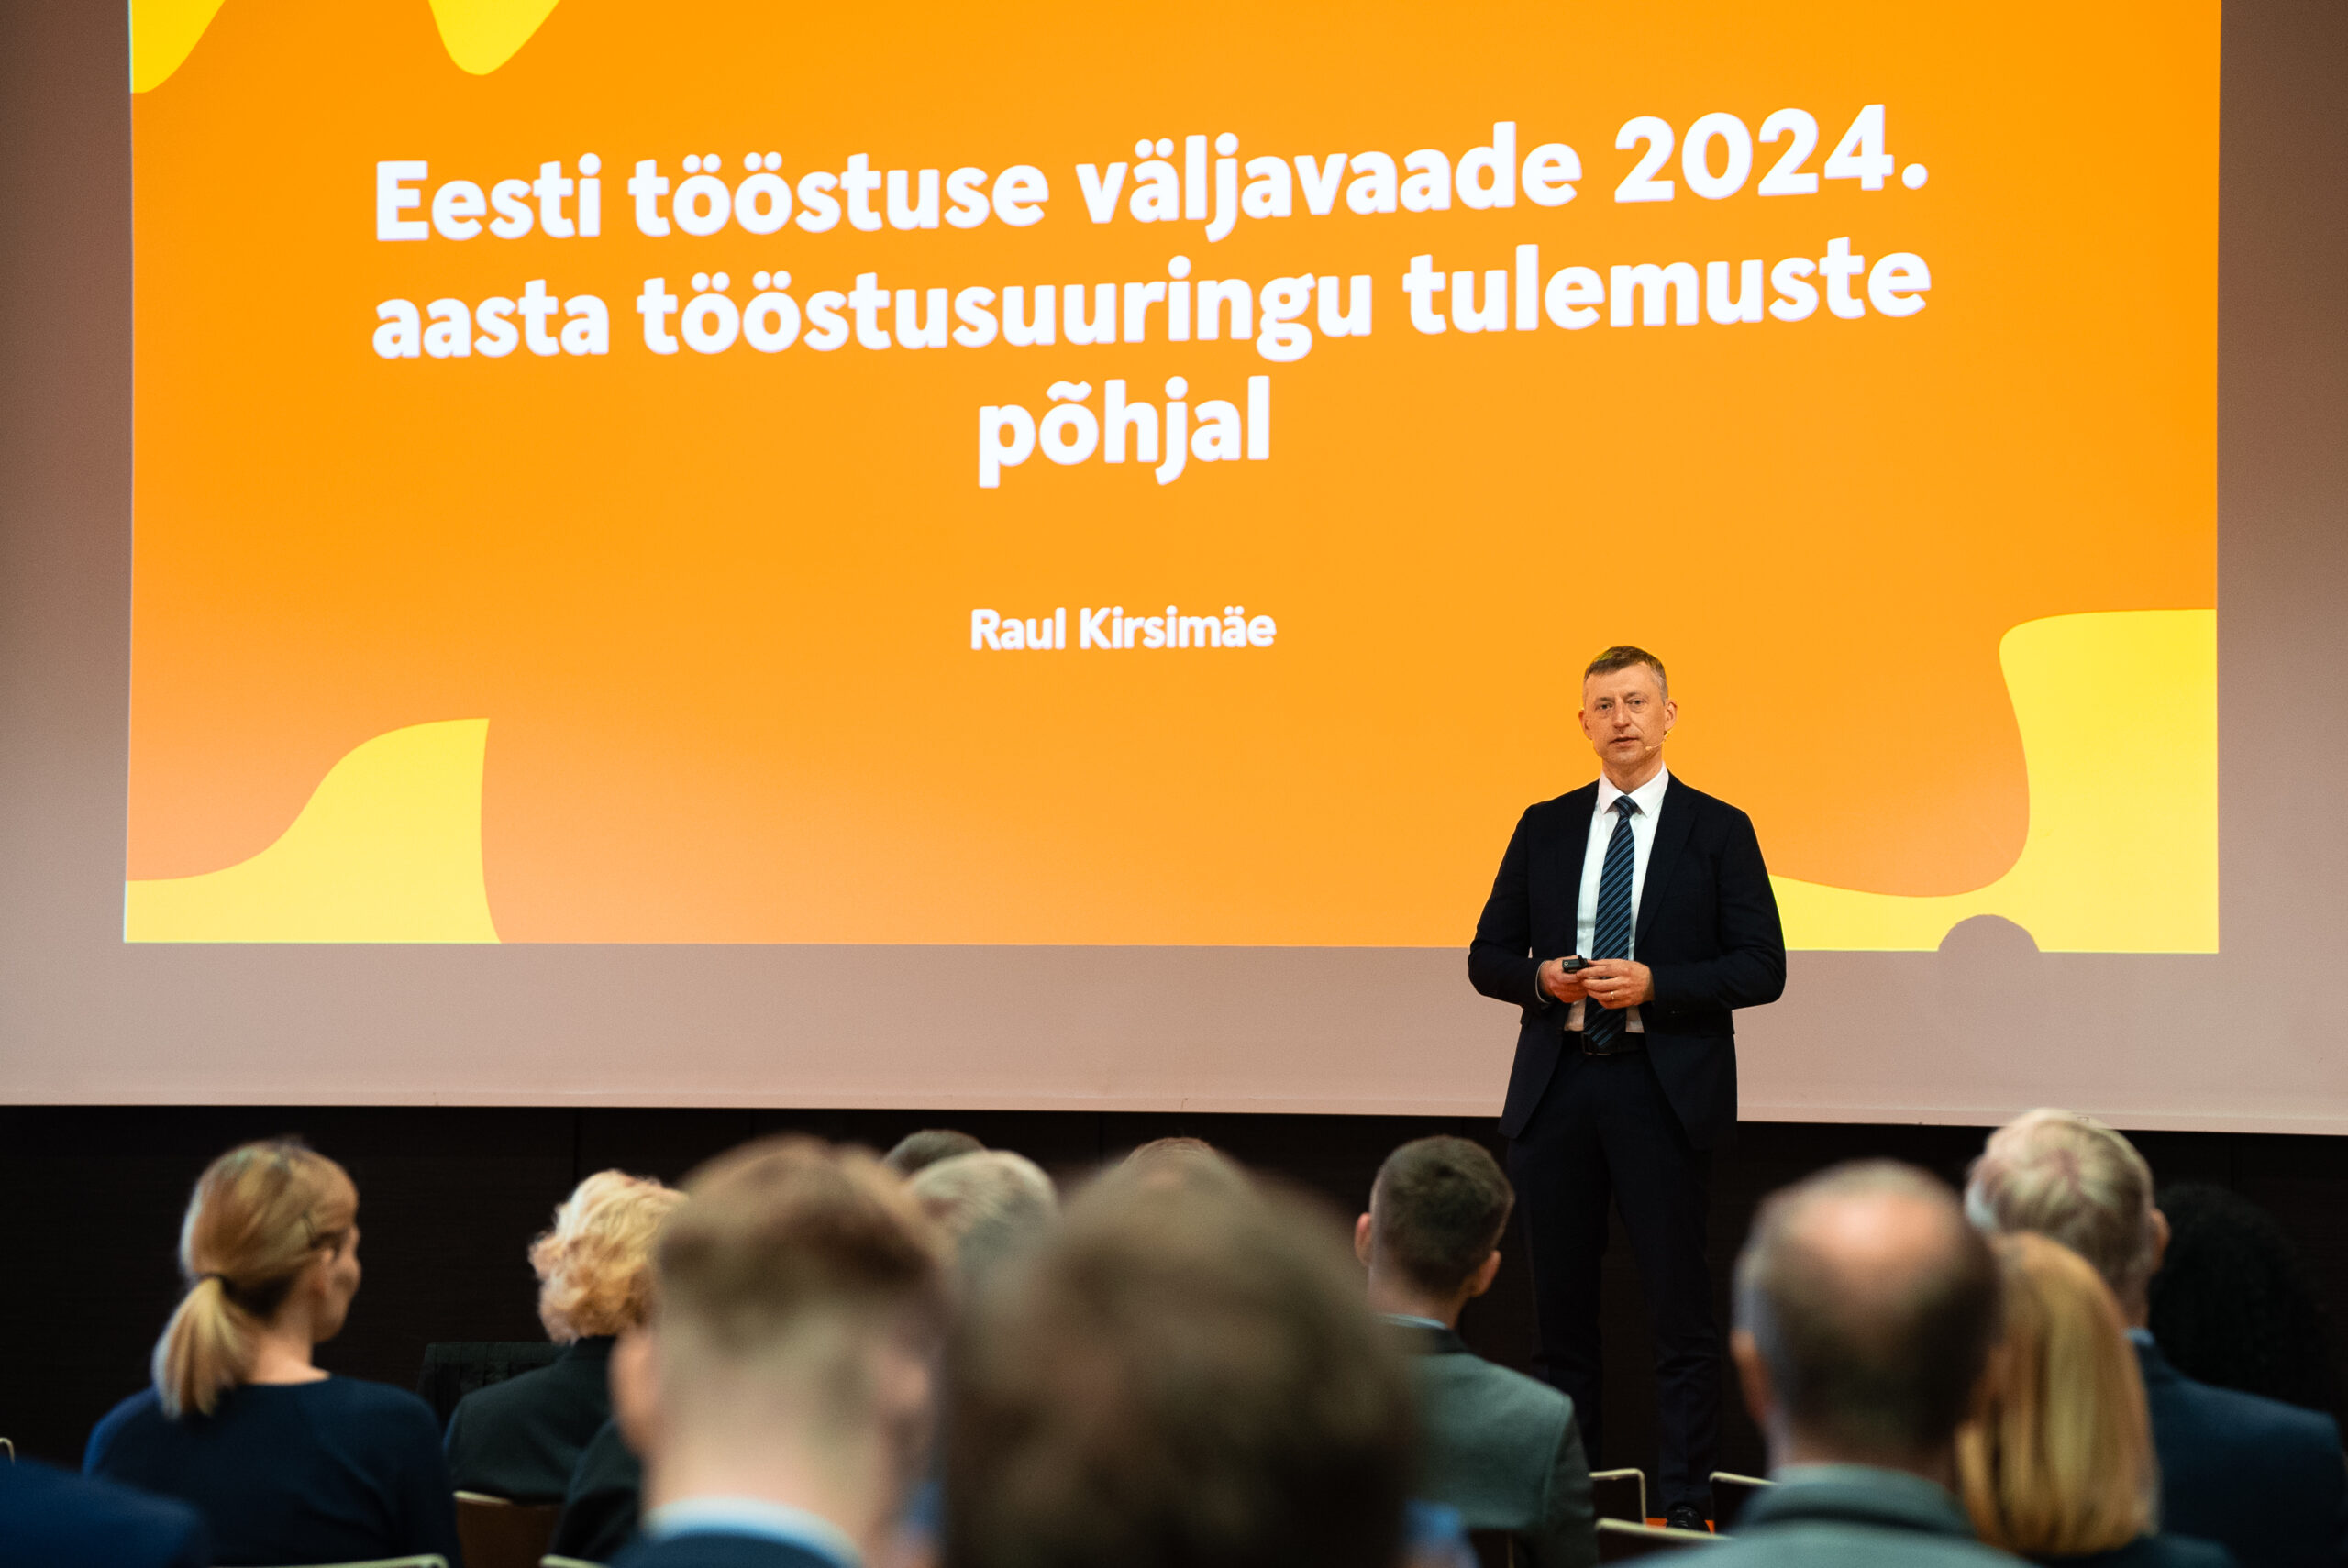 Raul Kirsimäe, Tööstusuuring 2024: Eesti tööstuse väljavaade 2024. aasta tööstusuuringu tulemuste põhjal